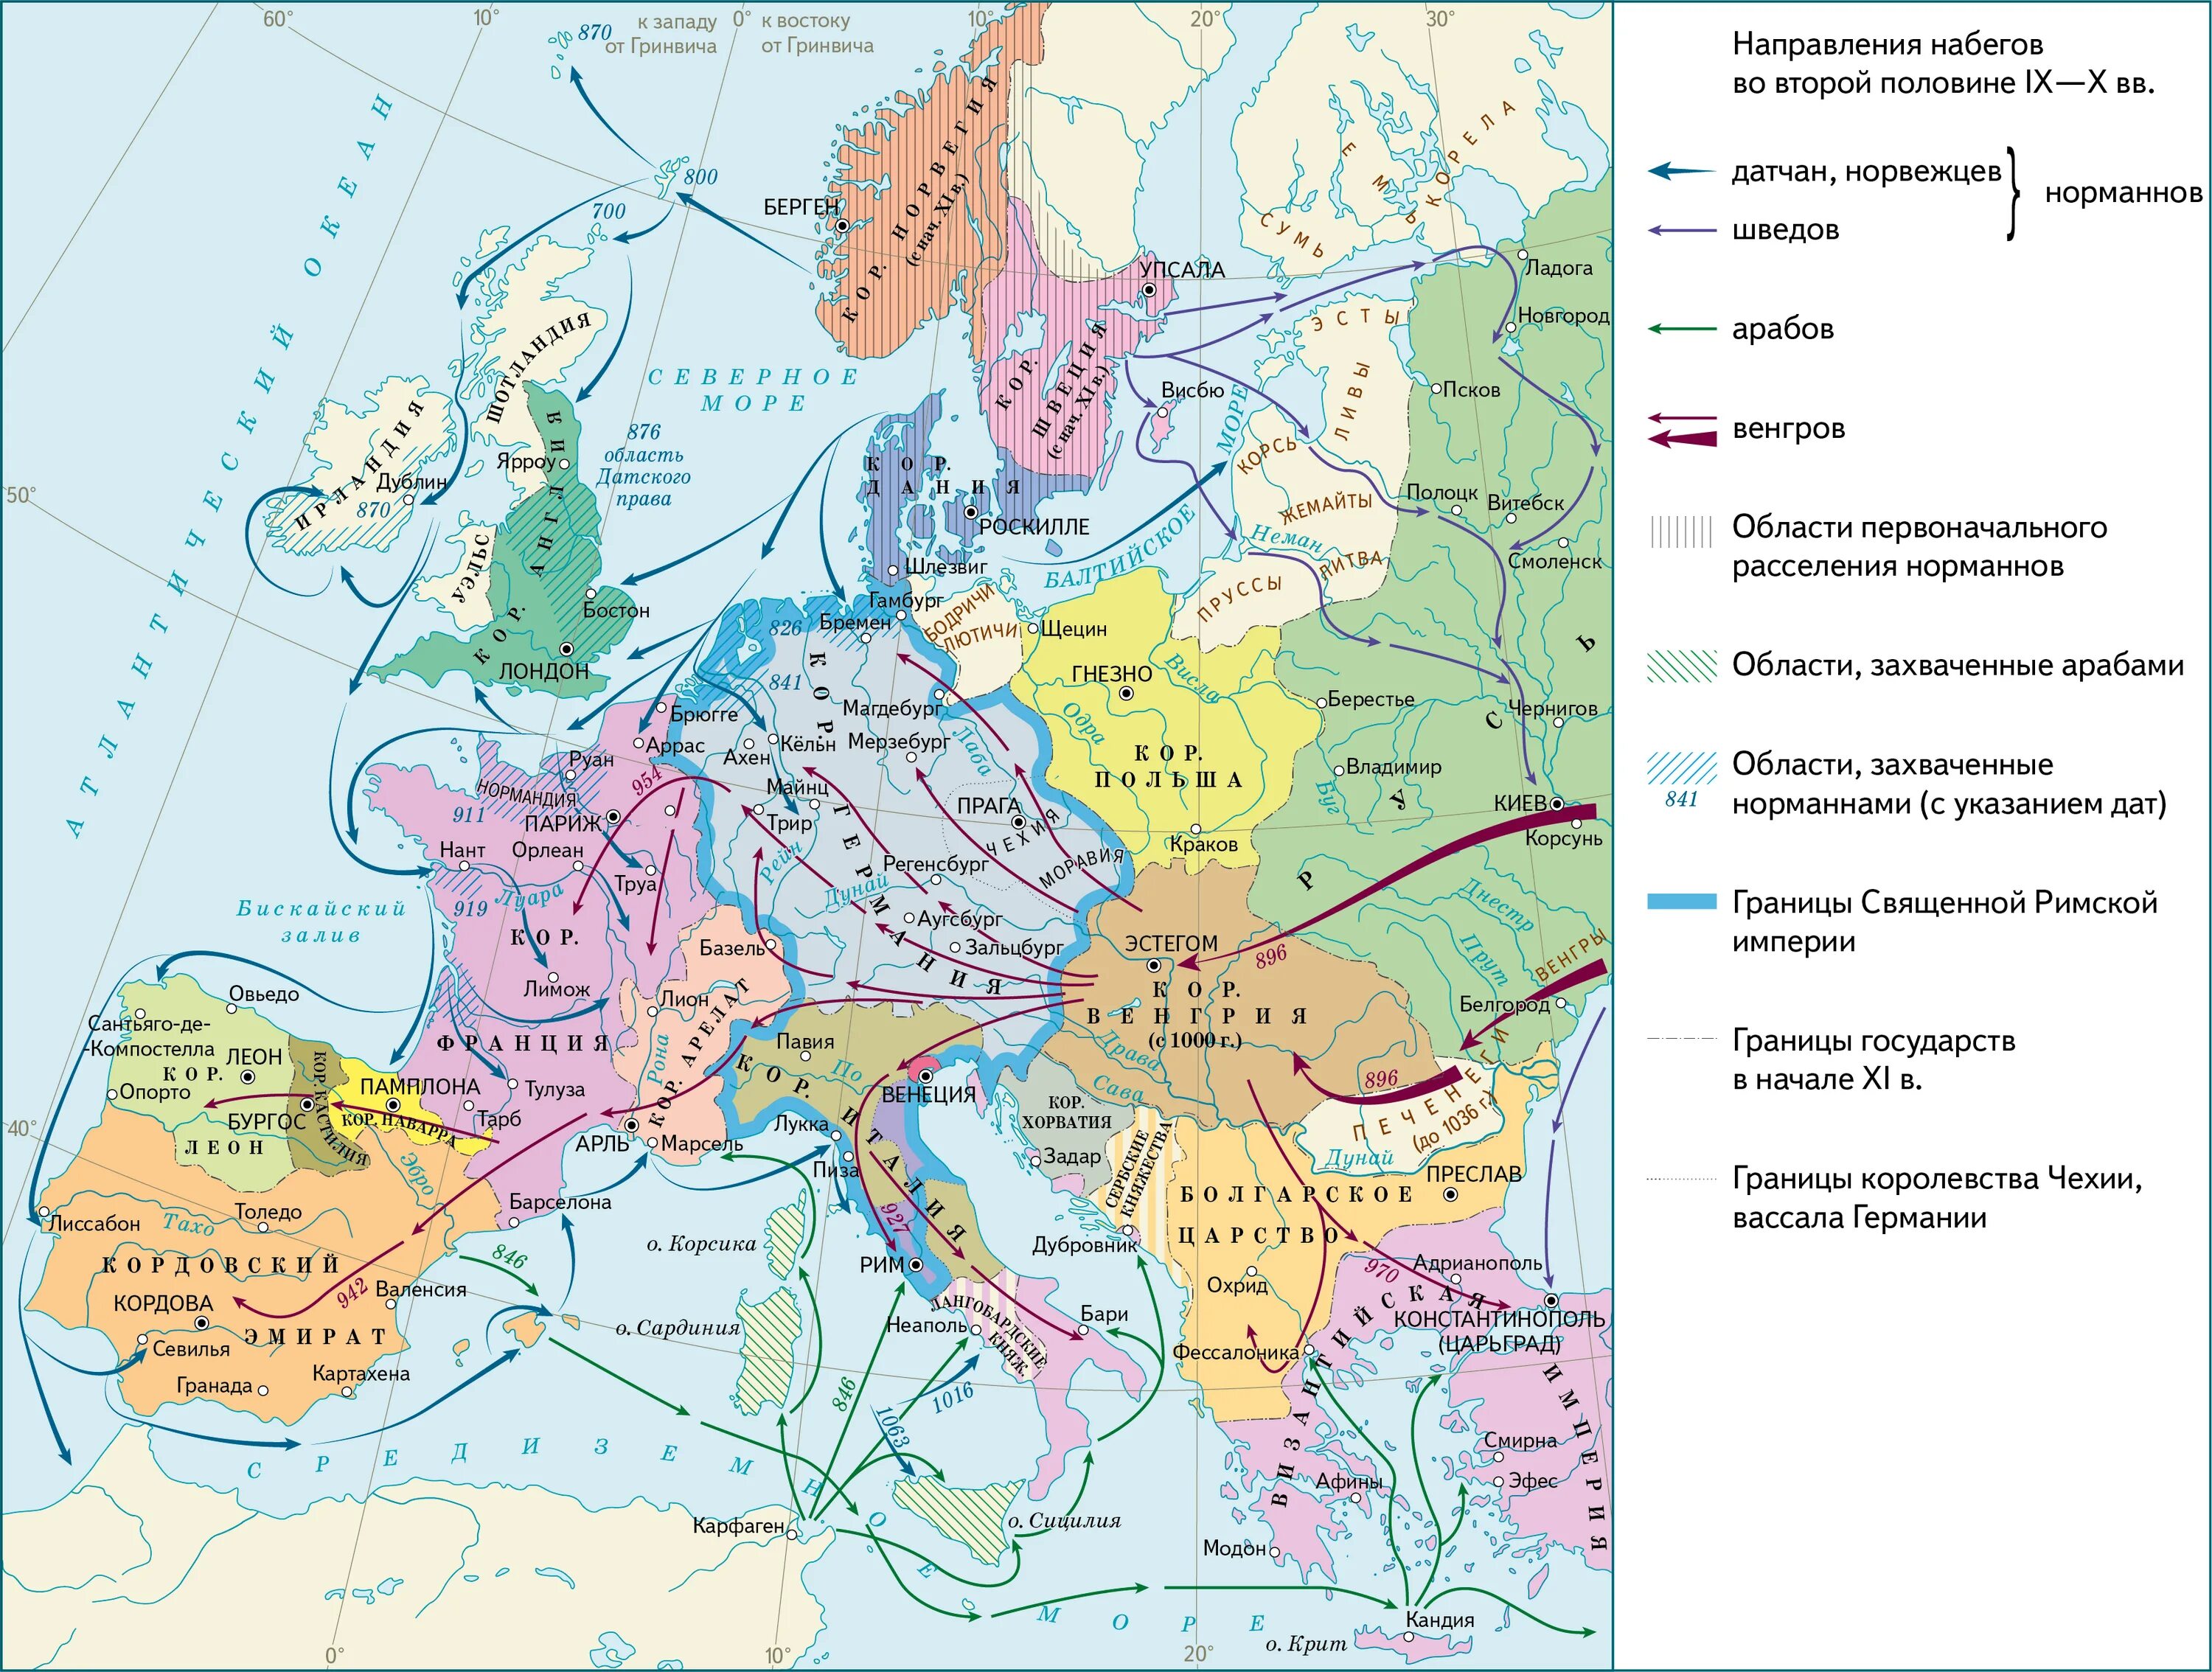 Завоевание норманнов в Европе 9-11 века. Завоевания норманнов в Европе в 9-11 веках карта. Карта завоевания норманнов и венгров в Европе в 9-11 веках. Карта завоевания норманнов и венгров в Европе.